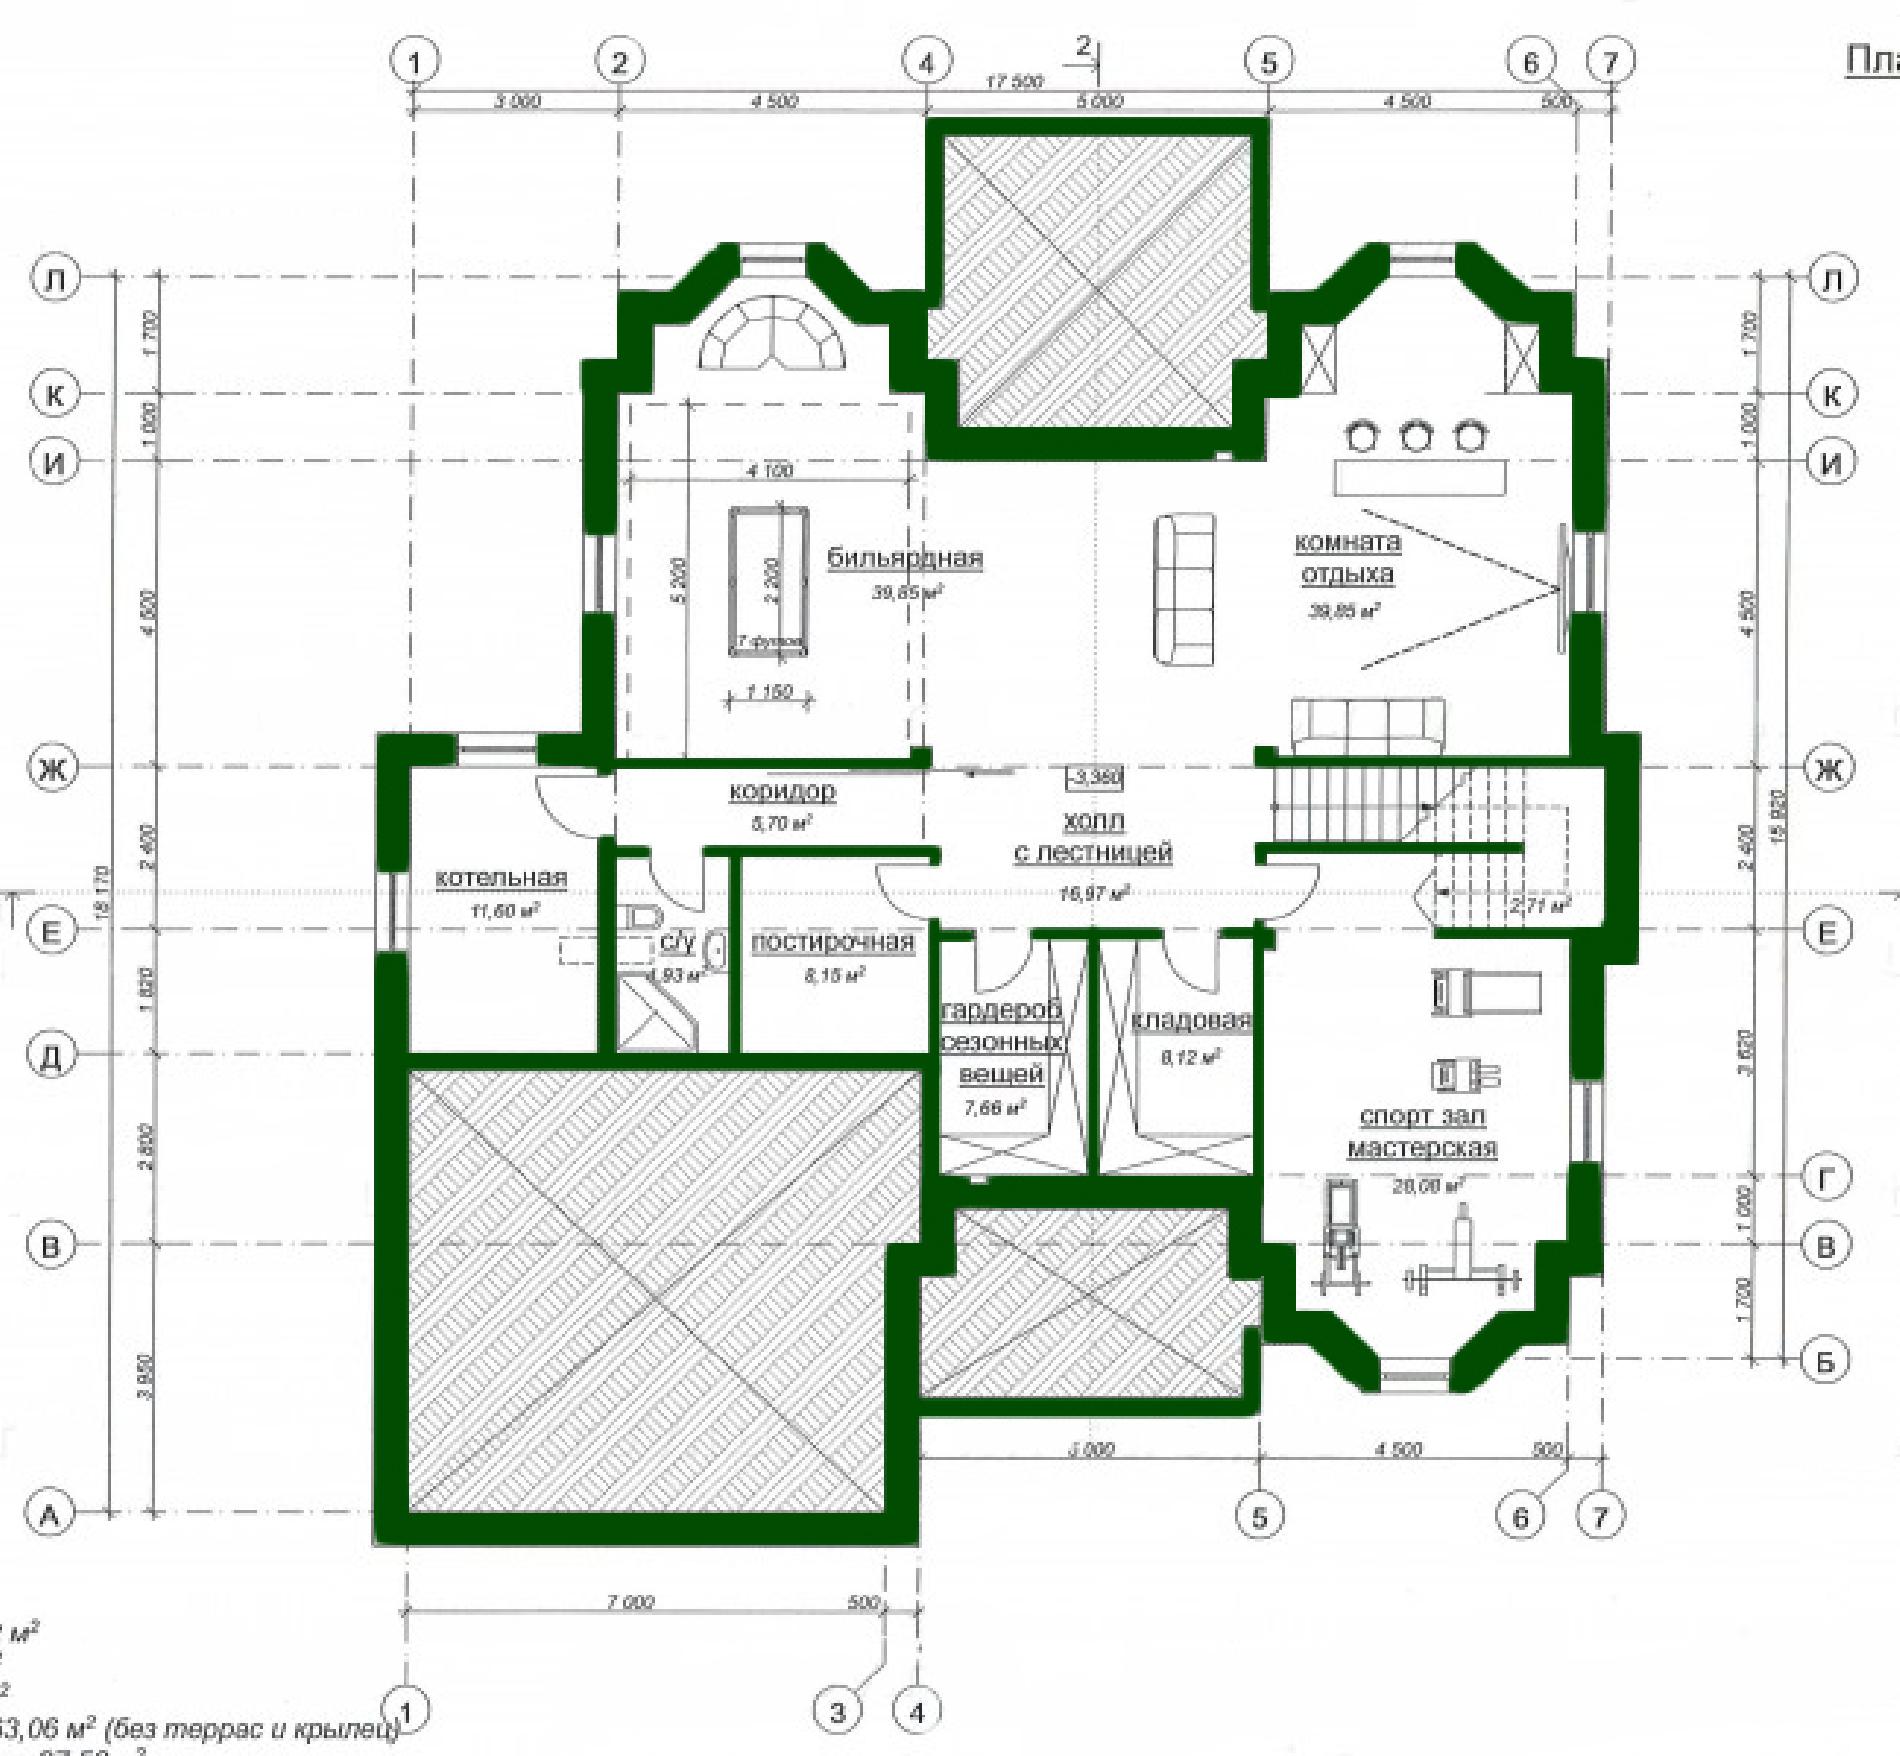 Планировка проекта дома №ml-563 ml-563 (3).jpg